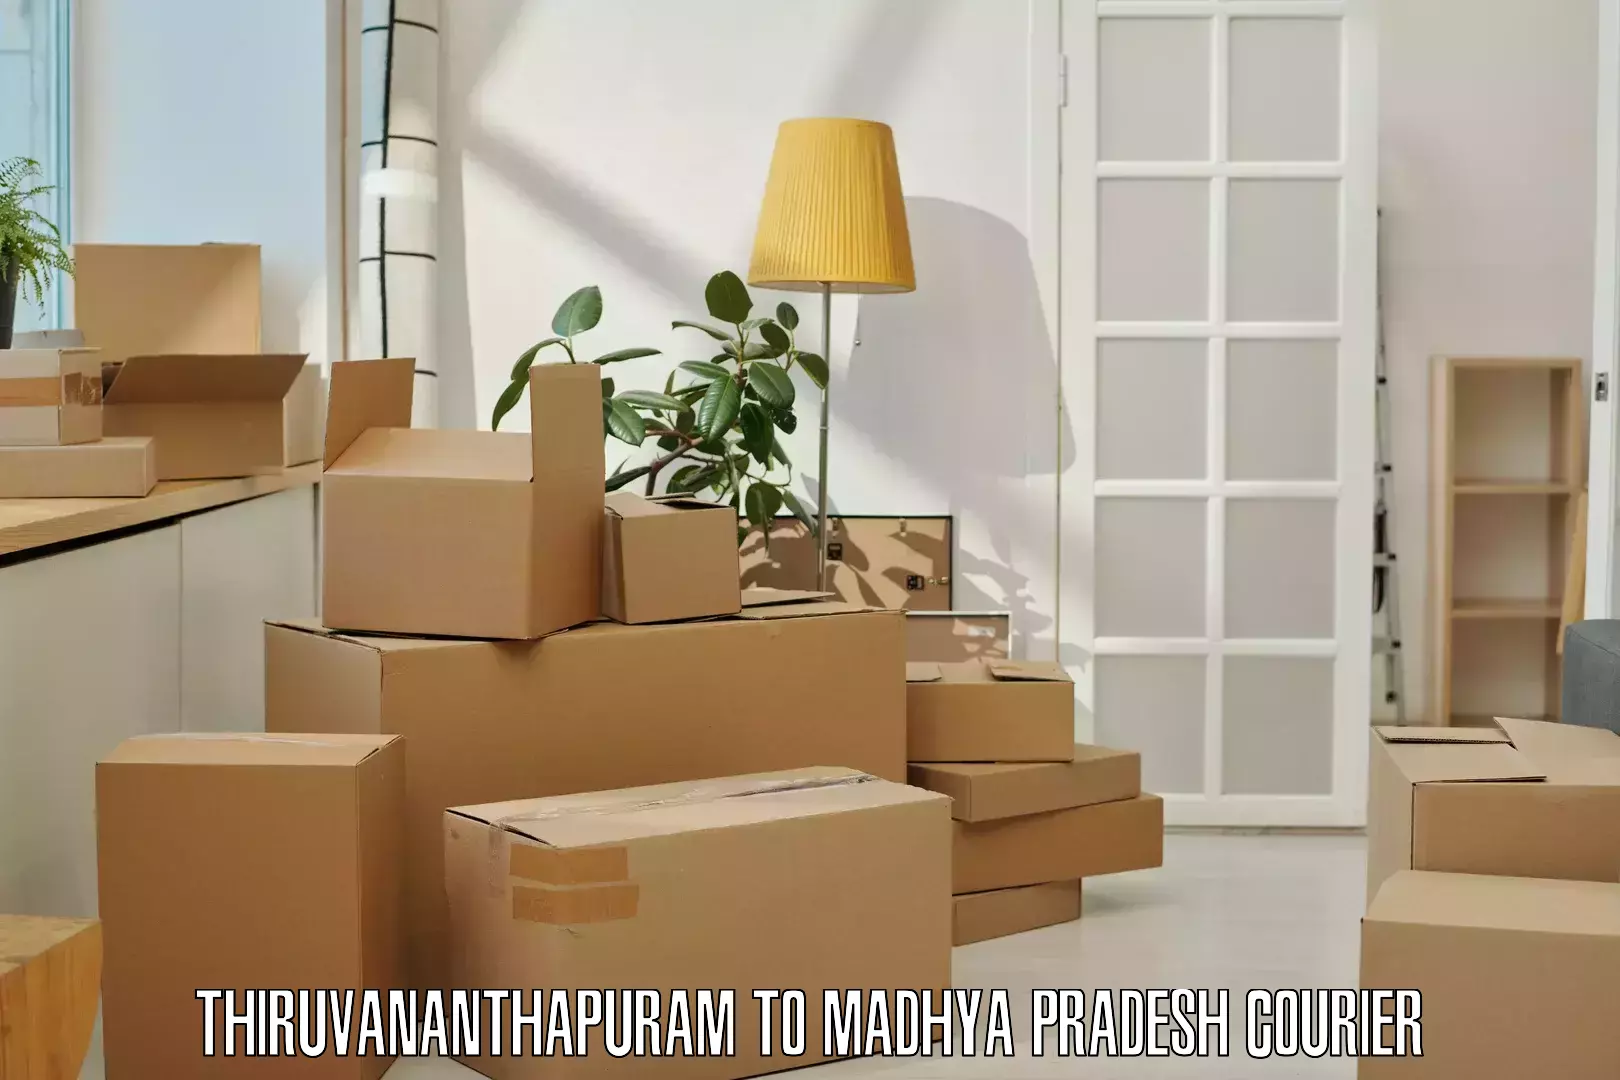 Customer-centric shipping Thiruvananthapuram to Jabalpur